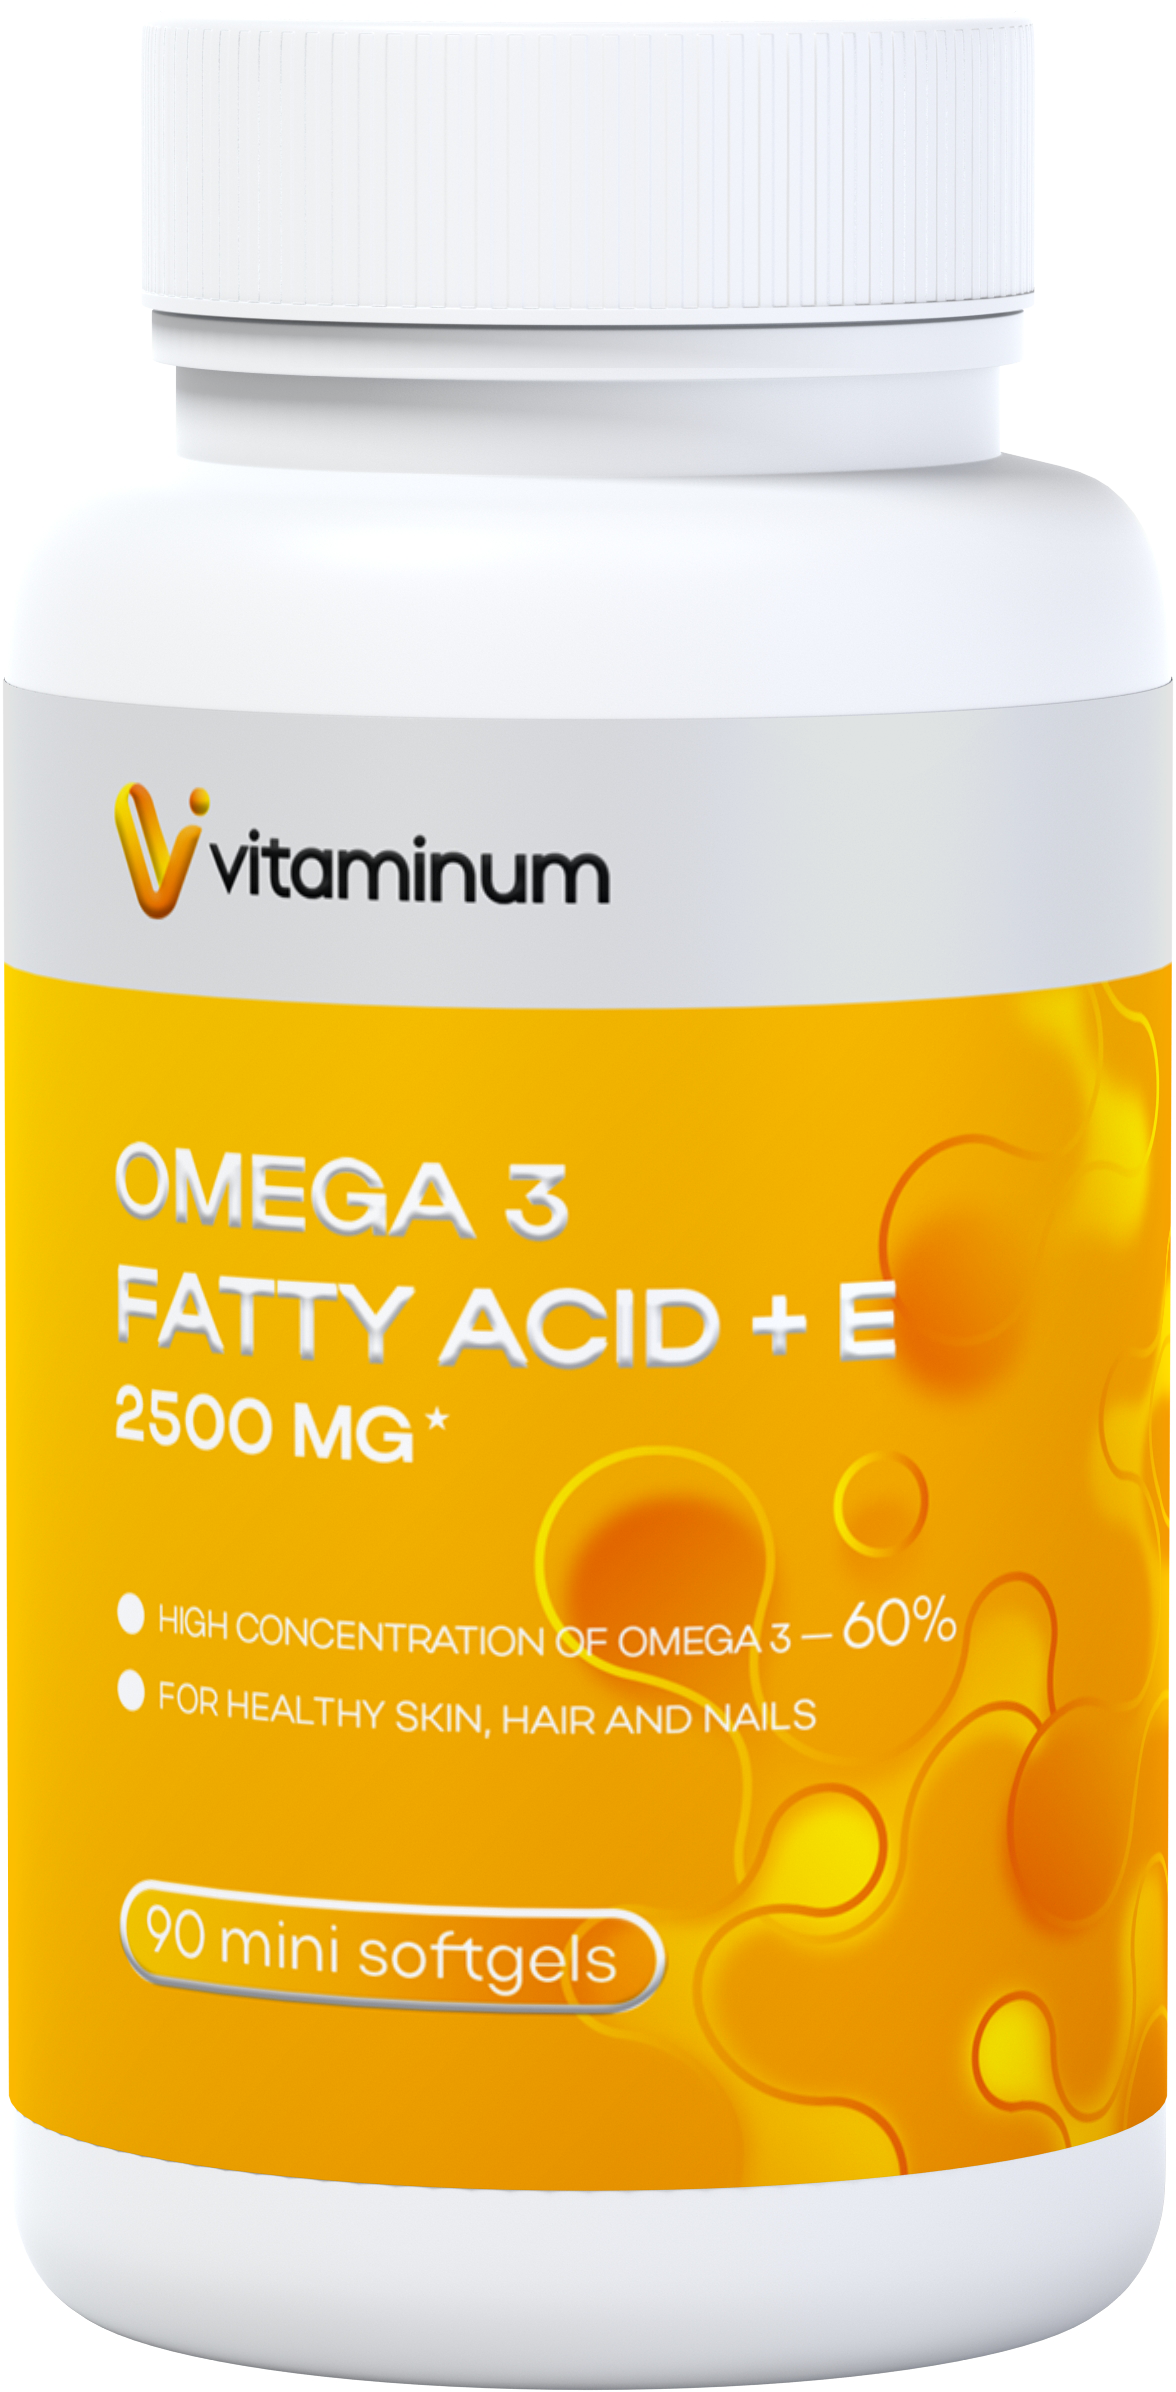  Vitaminum ОМЕГА 3 60% + витамин Е (2500 MG*) 90 капсул 700 мг   в Туле